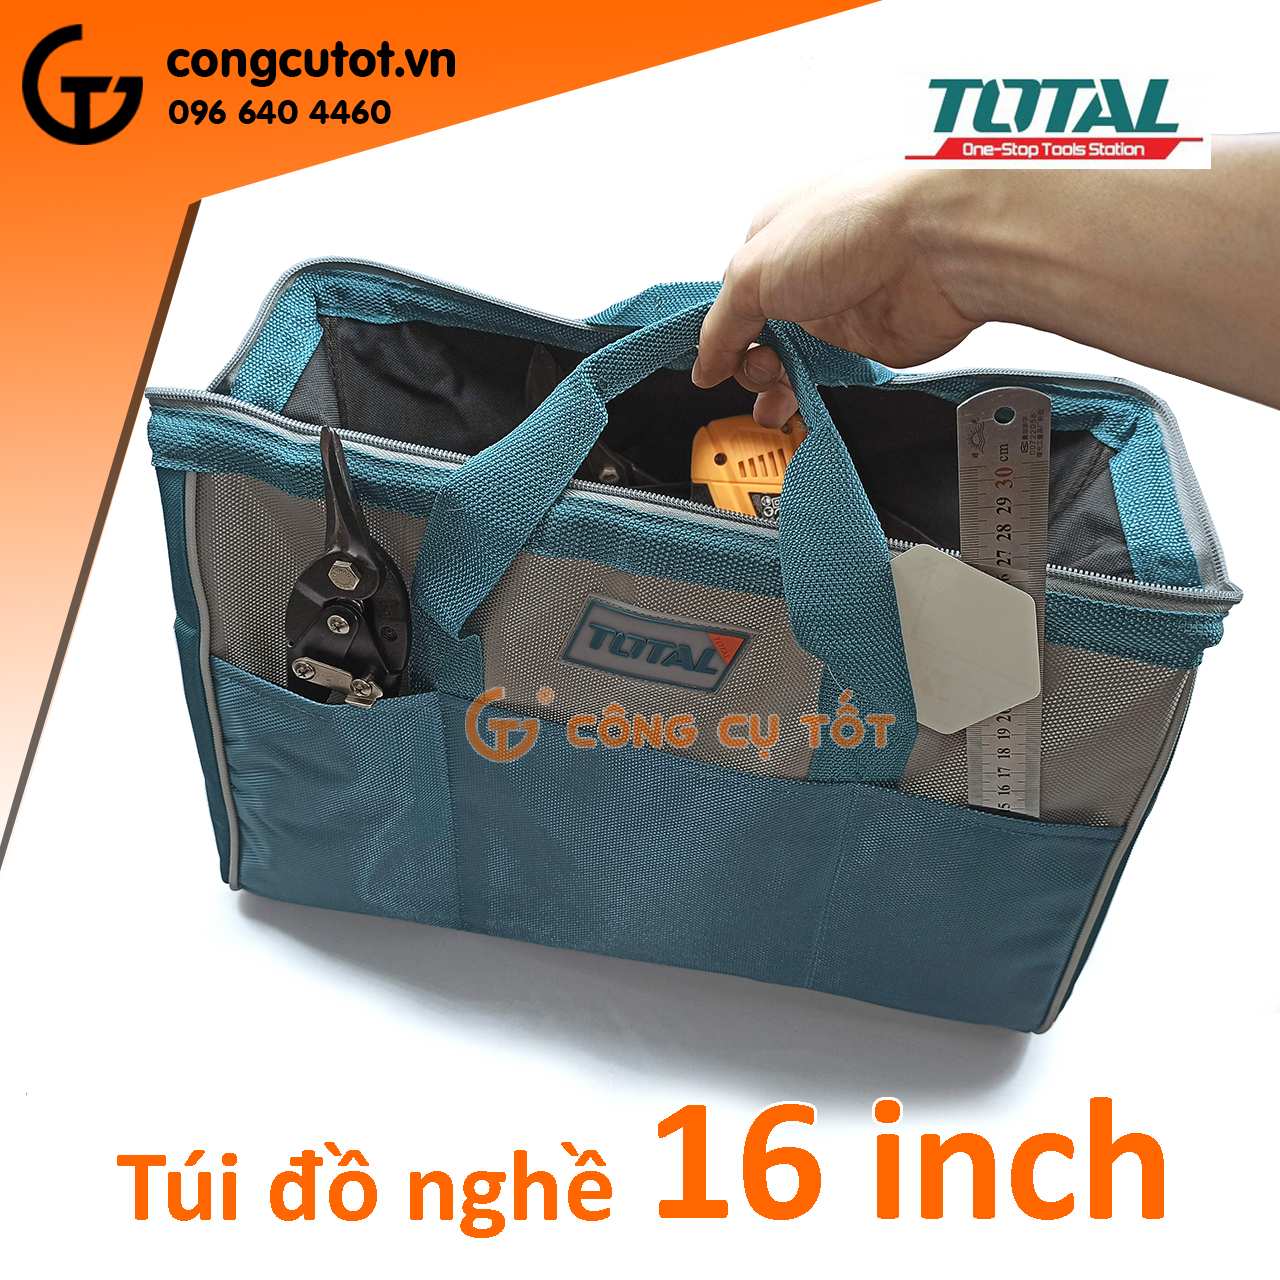 Túi đồ nghề 16 inch Total THT26161.